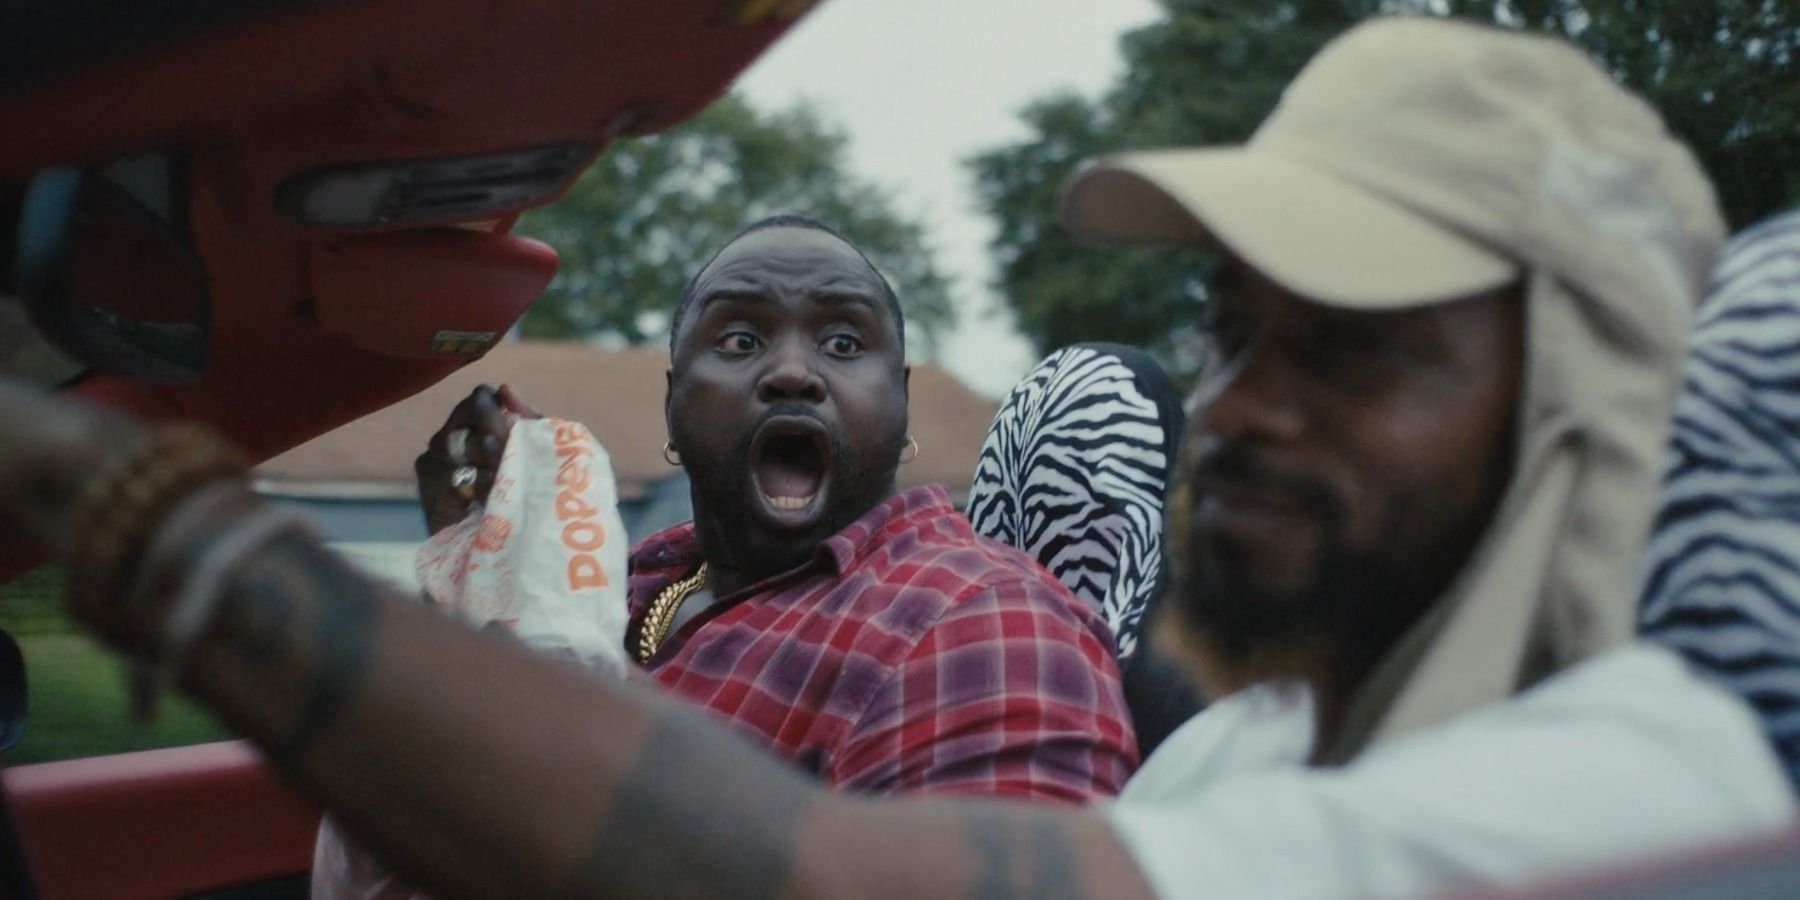 Brian Tyree Henry as Al screaming with Popeye's sandwich Atlanta finale